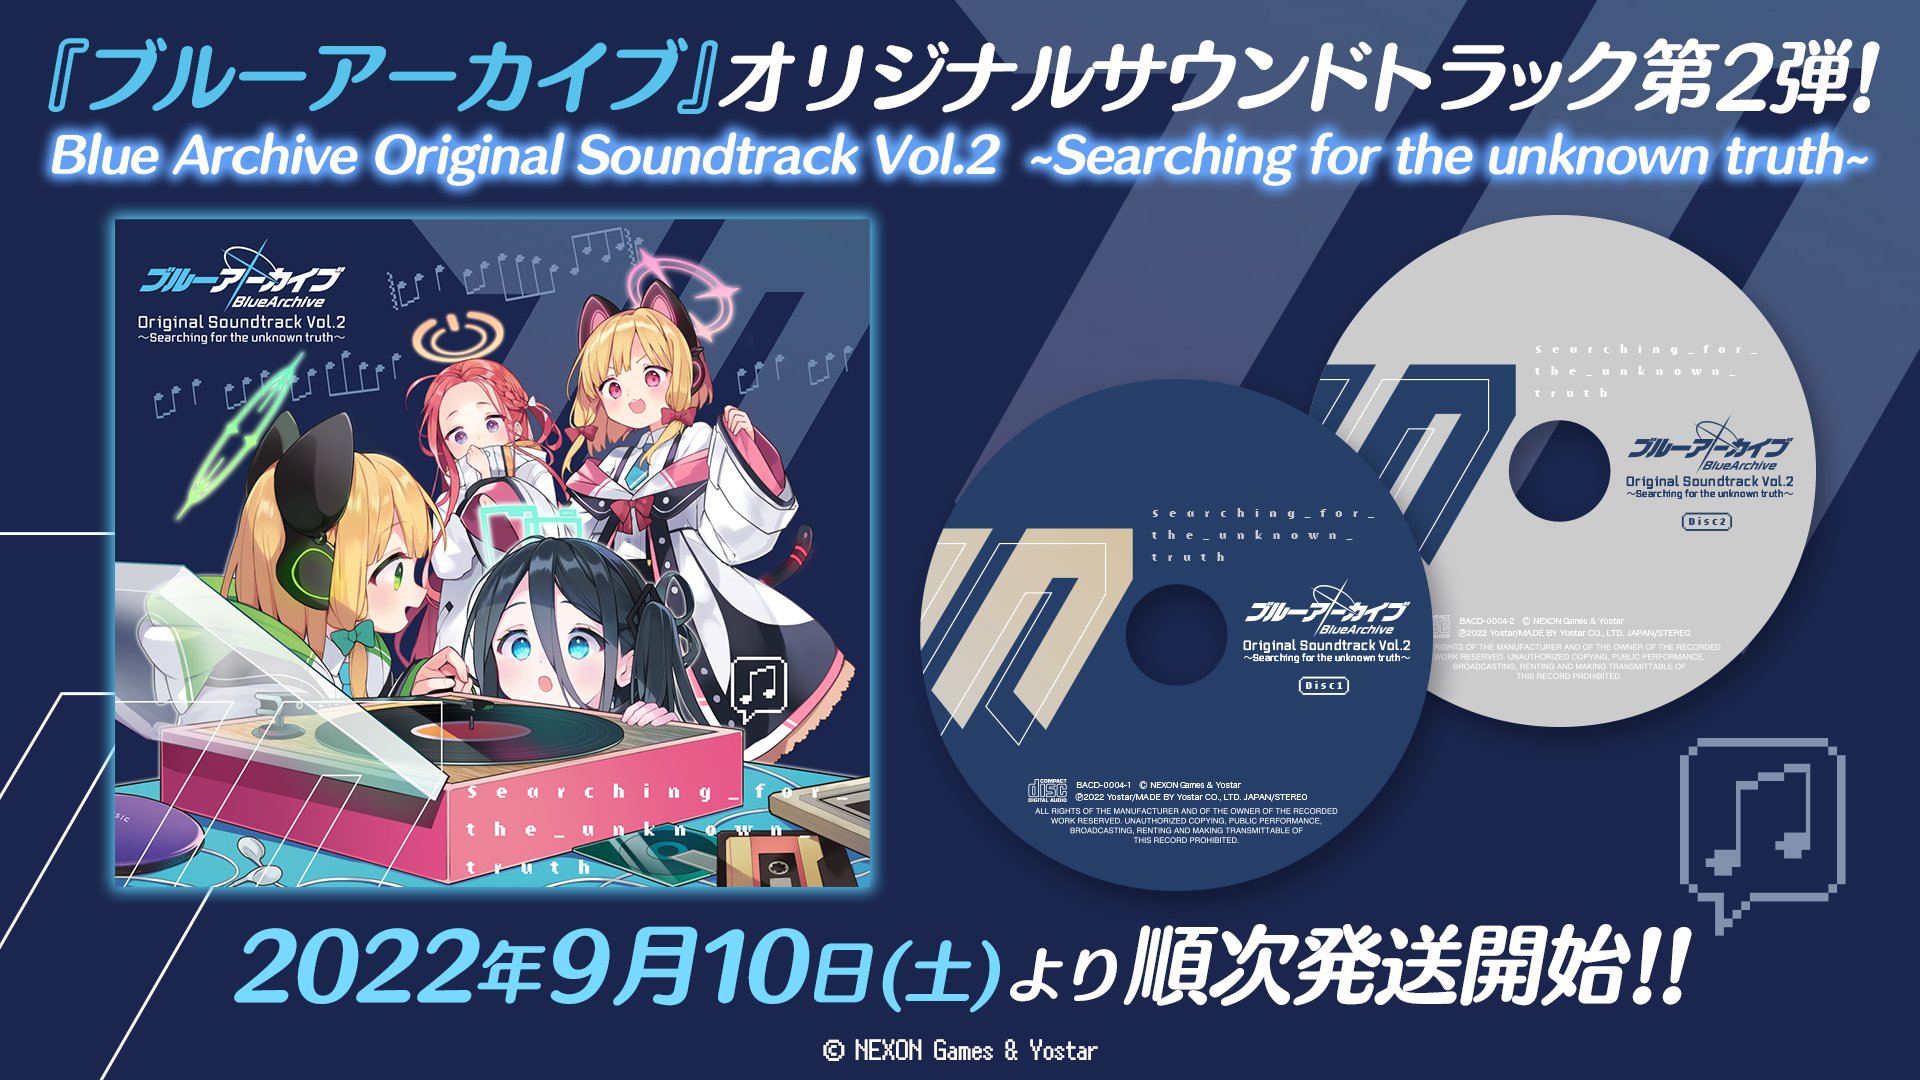 ブルーアーカイブ オリジナルサウンドトラック Vol.2 OST-